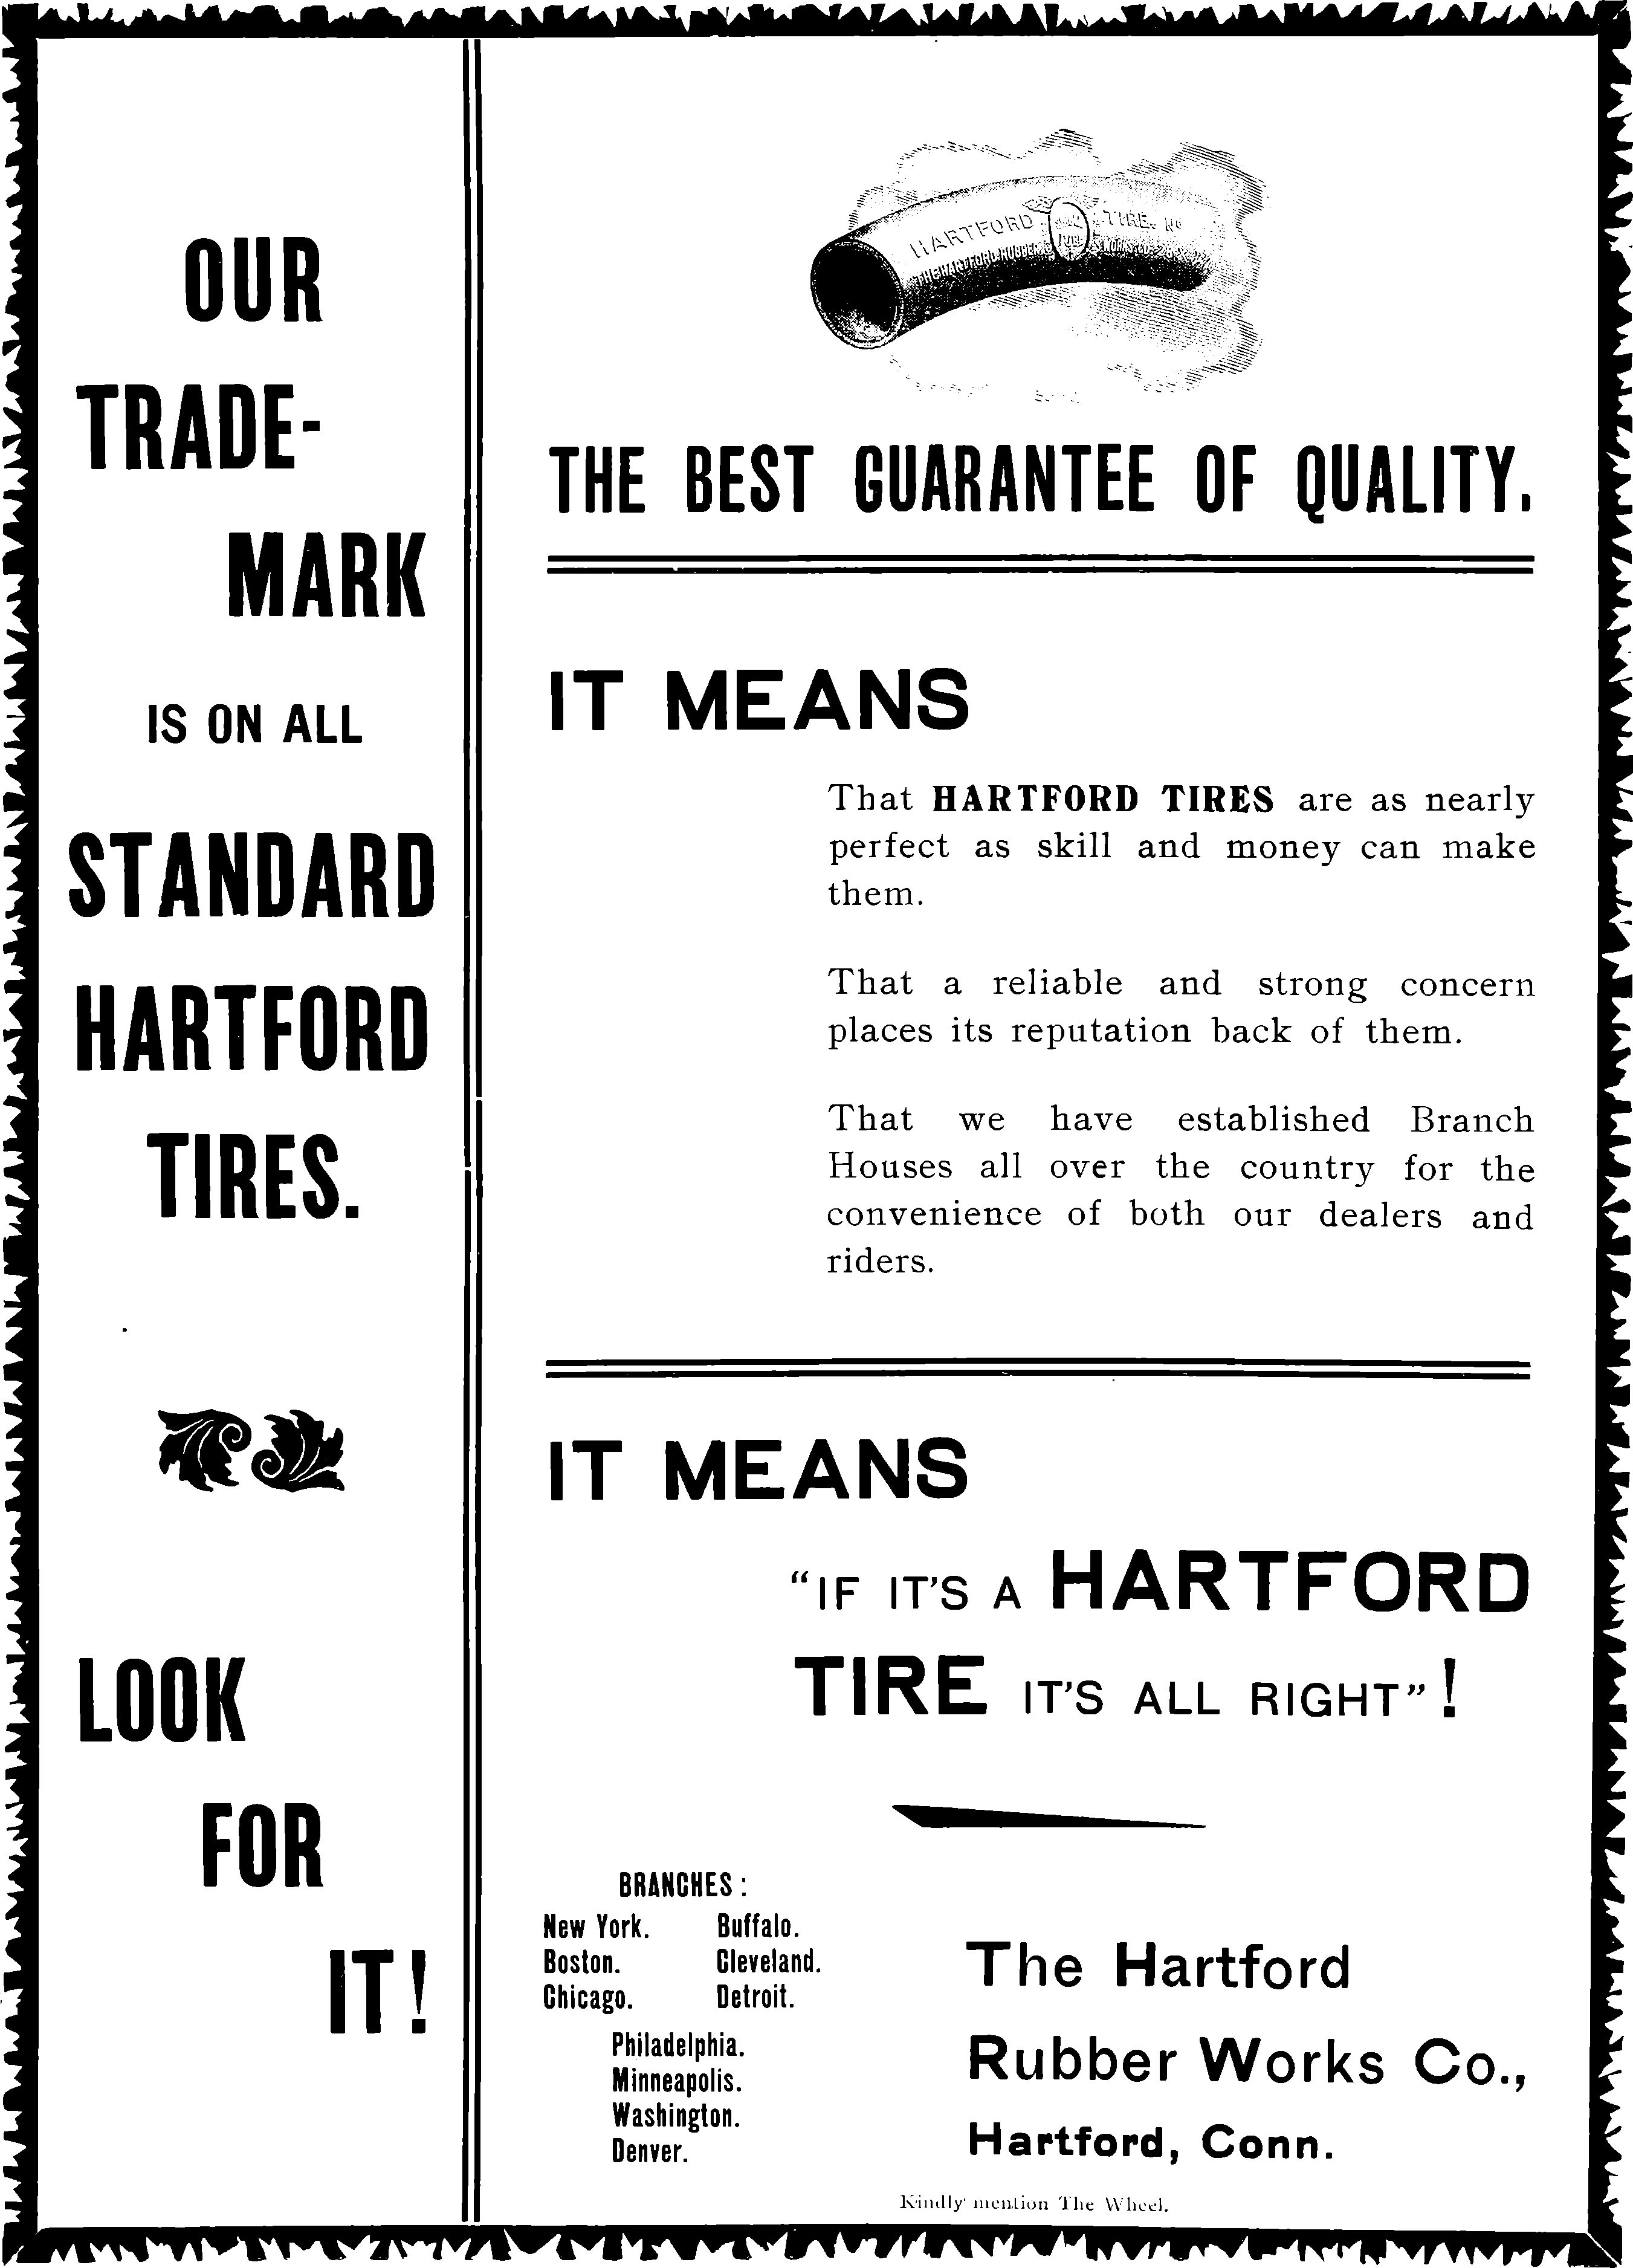 Hartford 1899 207.jpg